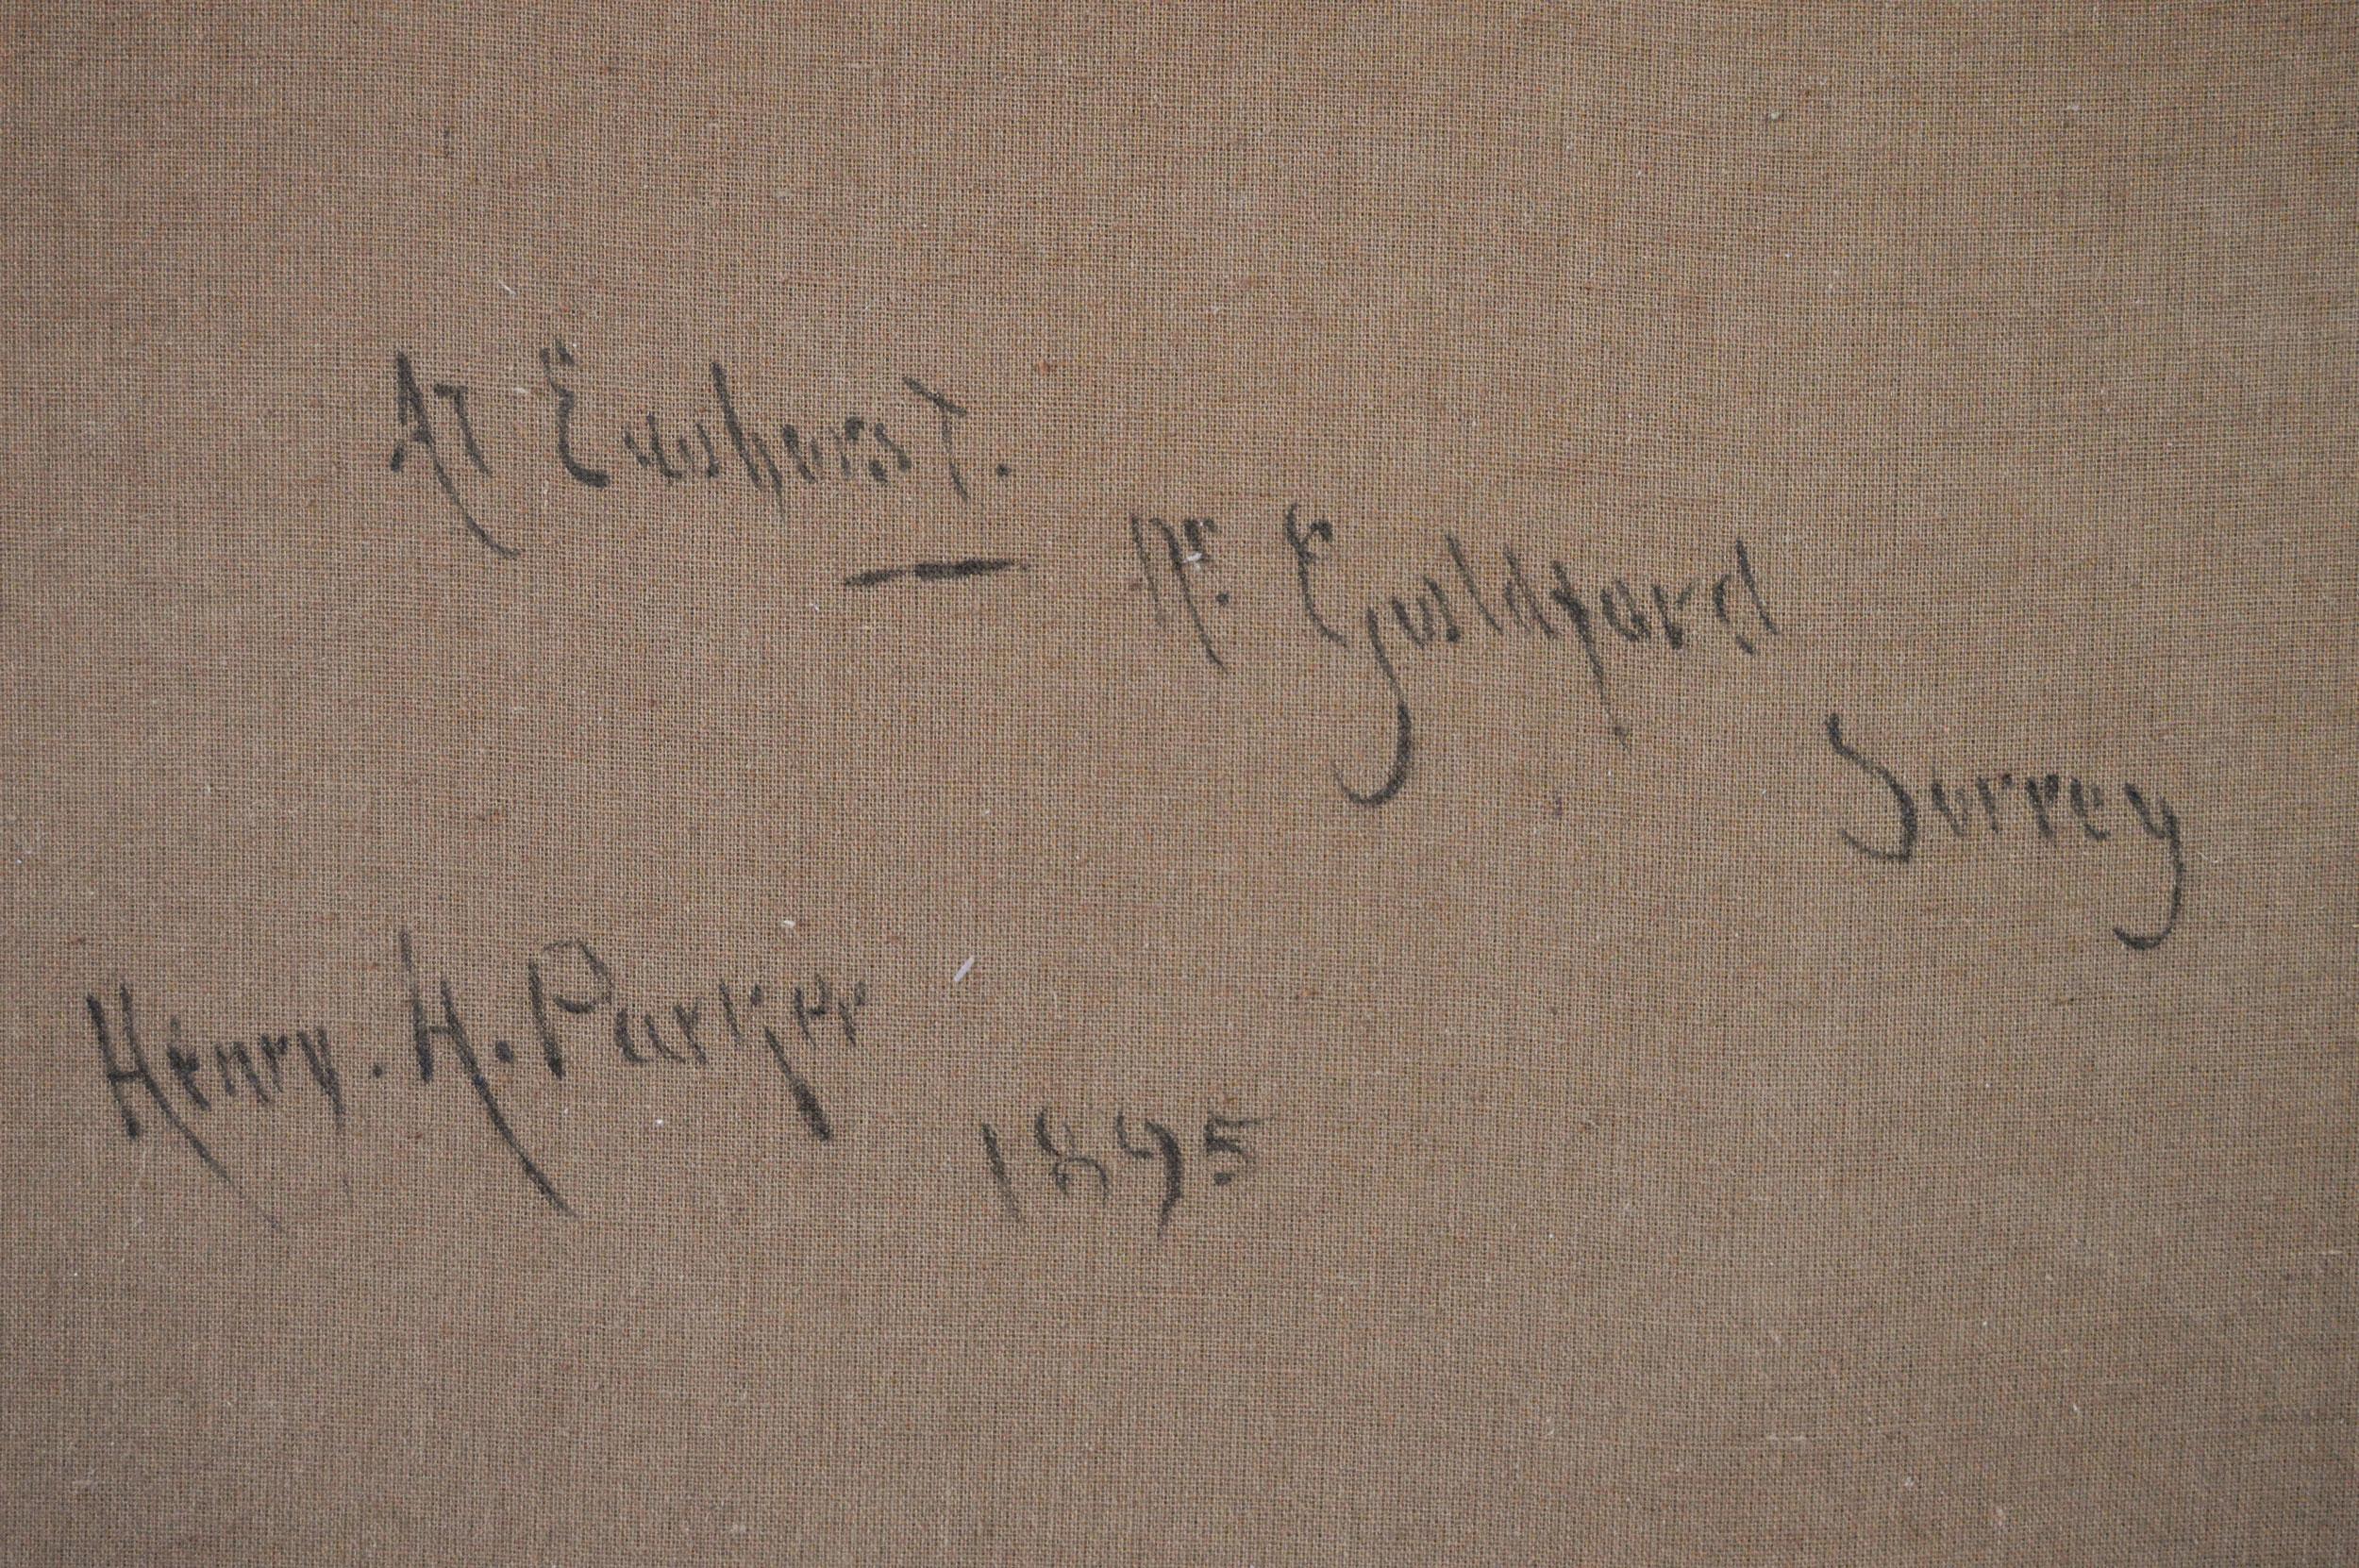 Henry HENRY 
Britannique, (1858-1930)
A Ewhurst près de Guildford, Surrey
Huile sur toile, signée et datée (18)95, transcrite au verso
Taille de l'image : 23.25 pouces x 35.25 pouces 
Dimensions, y compris le cadre : 30,25 pouces x 42,25 pouces

Une